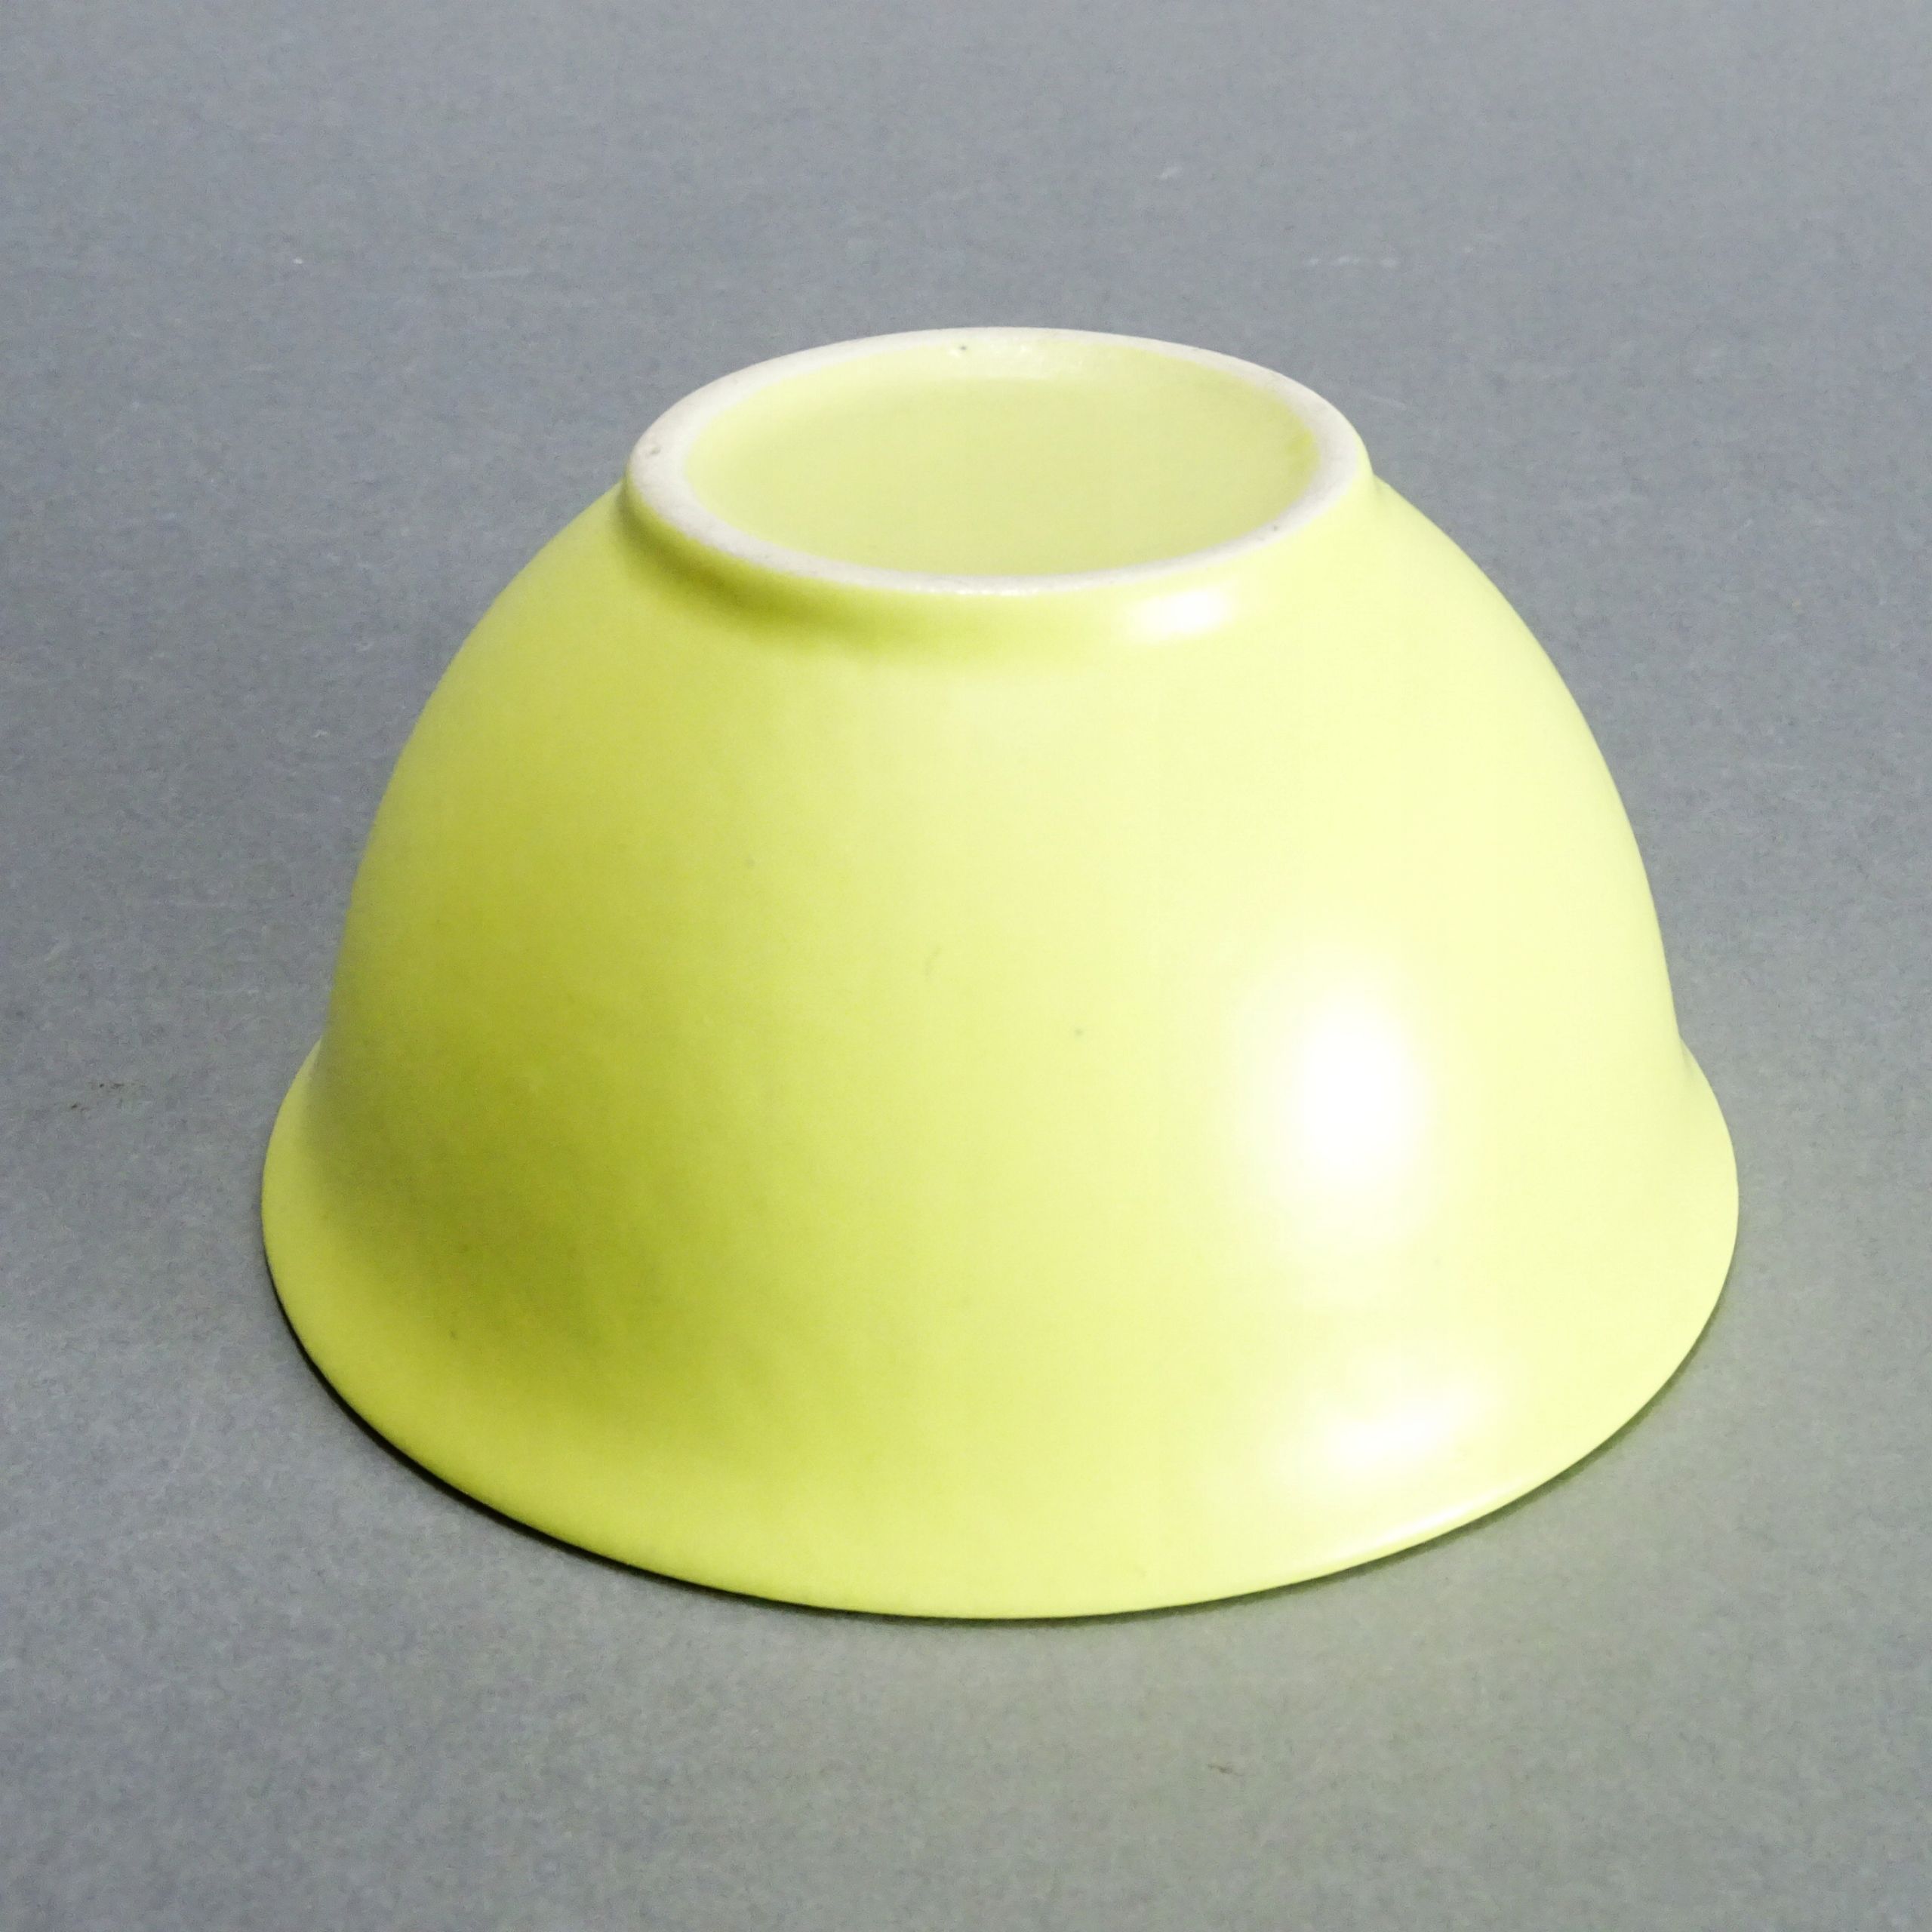 miseczka ceramiczna lata 50/60-te xx wieku